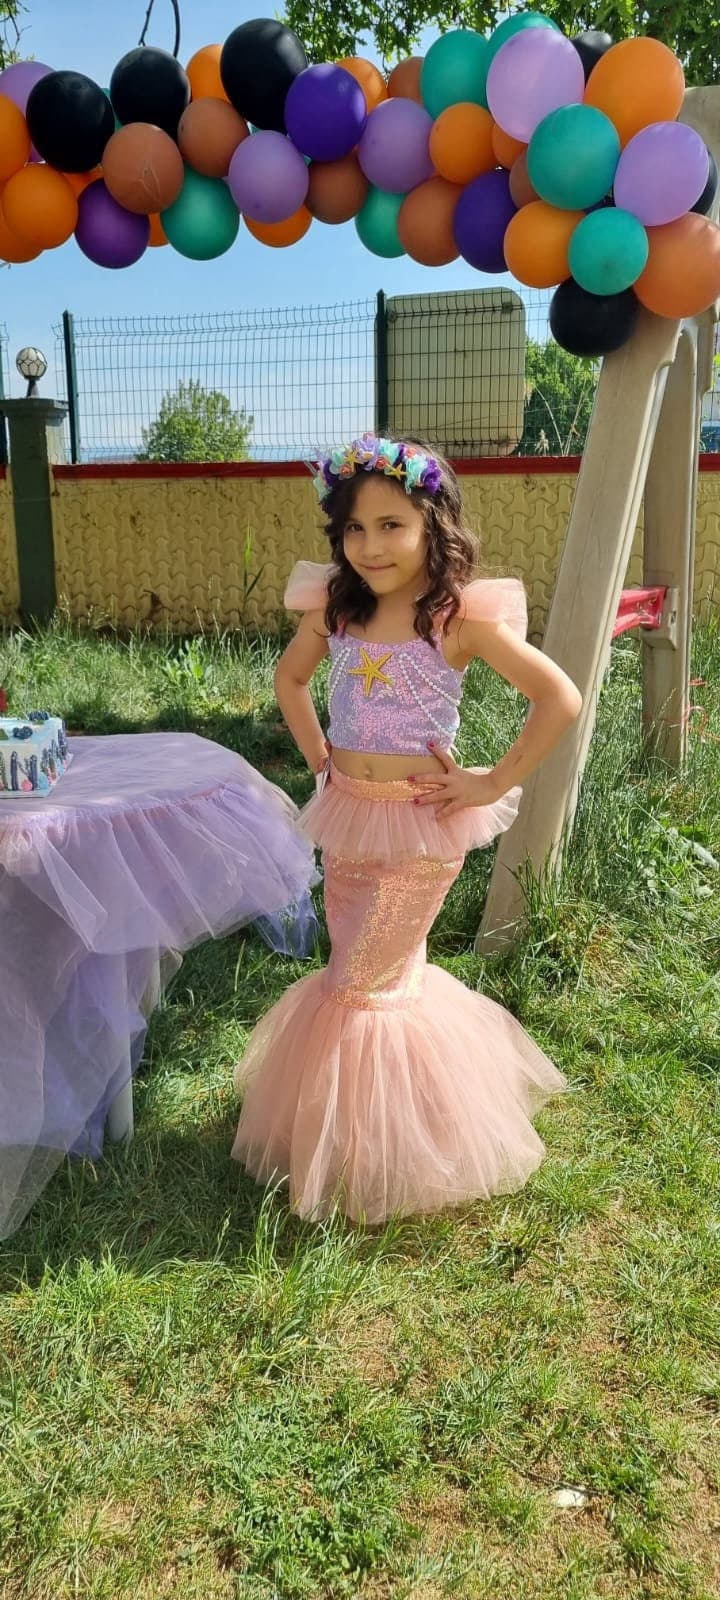 LiUiMiY Déguisement Sirène Costume Fille Robe Princesse Ariel Enfant pour  Anniversaire Carnaval Fête Halloween avec Accessoires